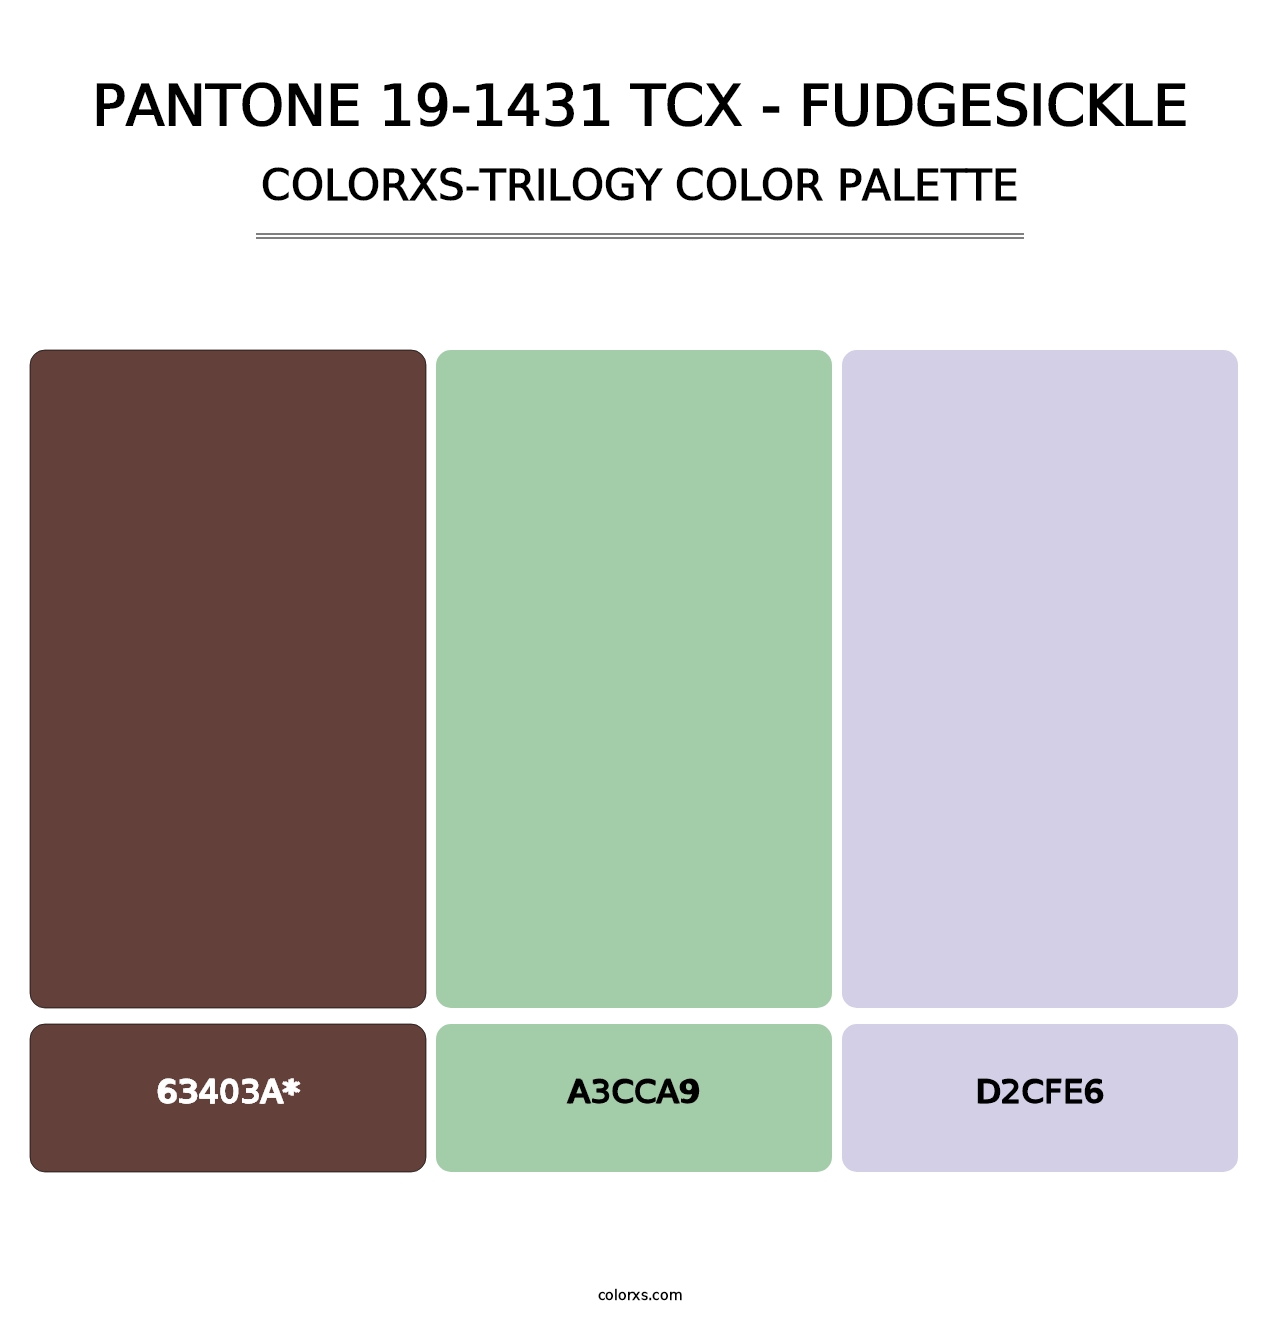 PANTONE 19-1431 TCX - Fudgesickle - Colorxs Trilogy Palette